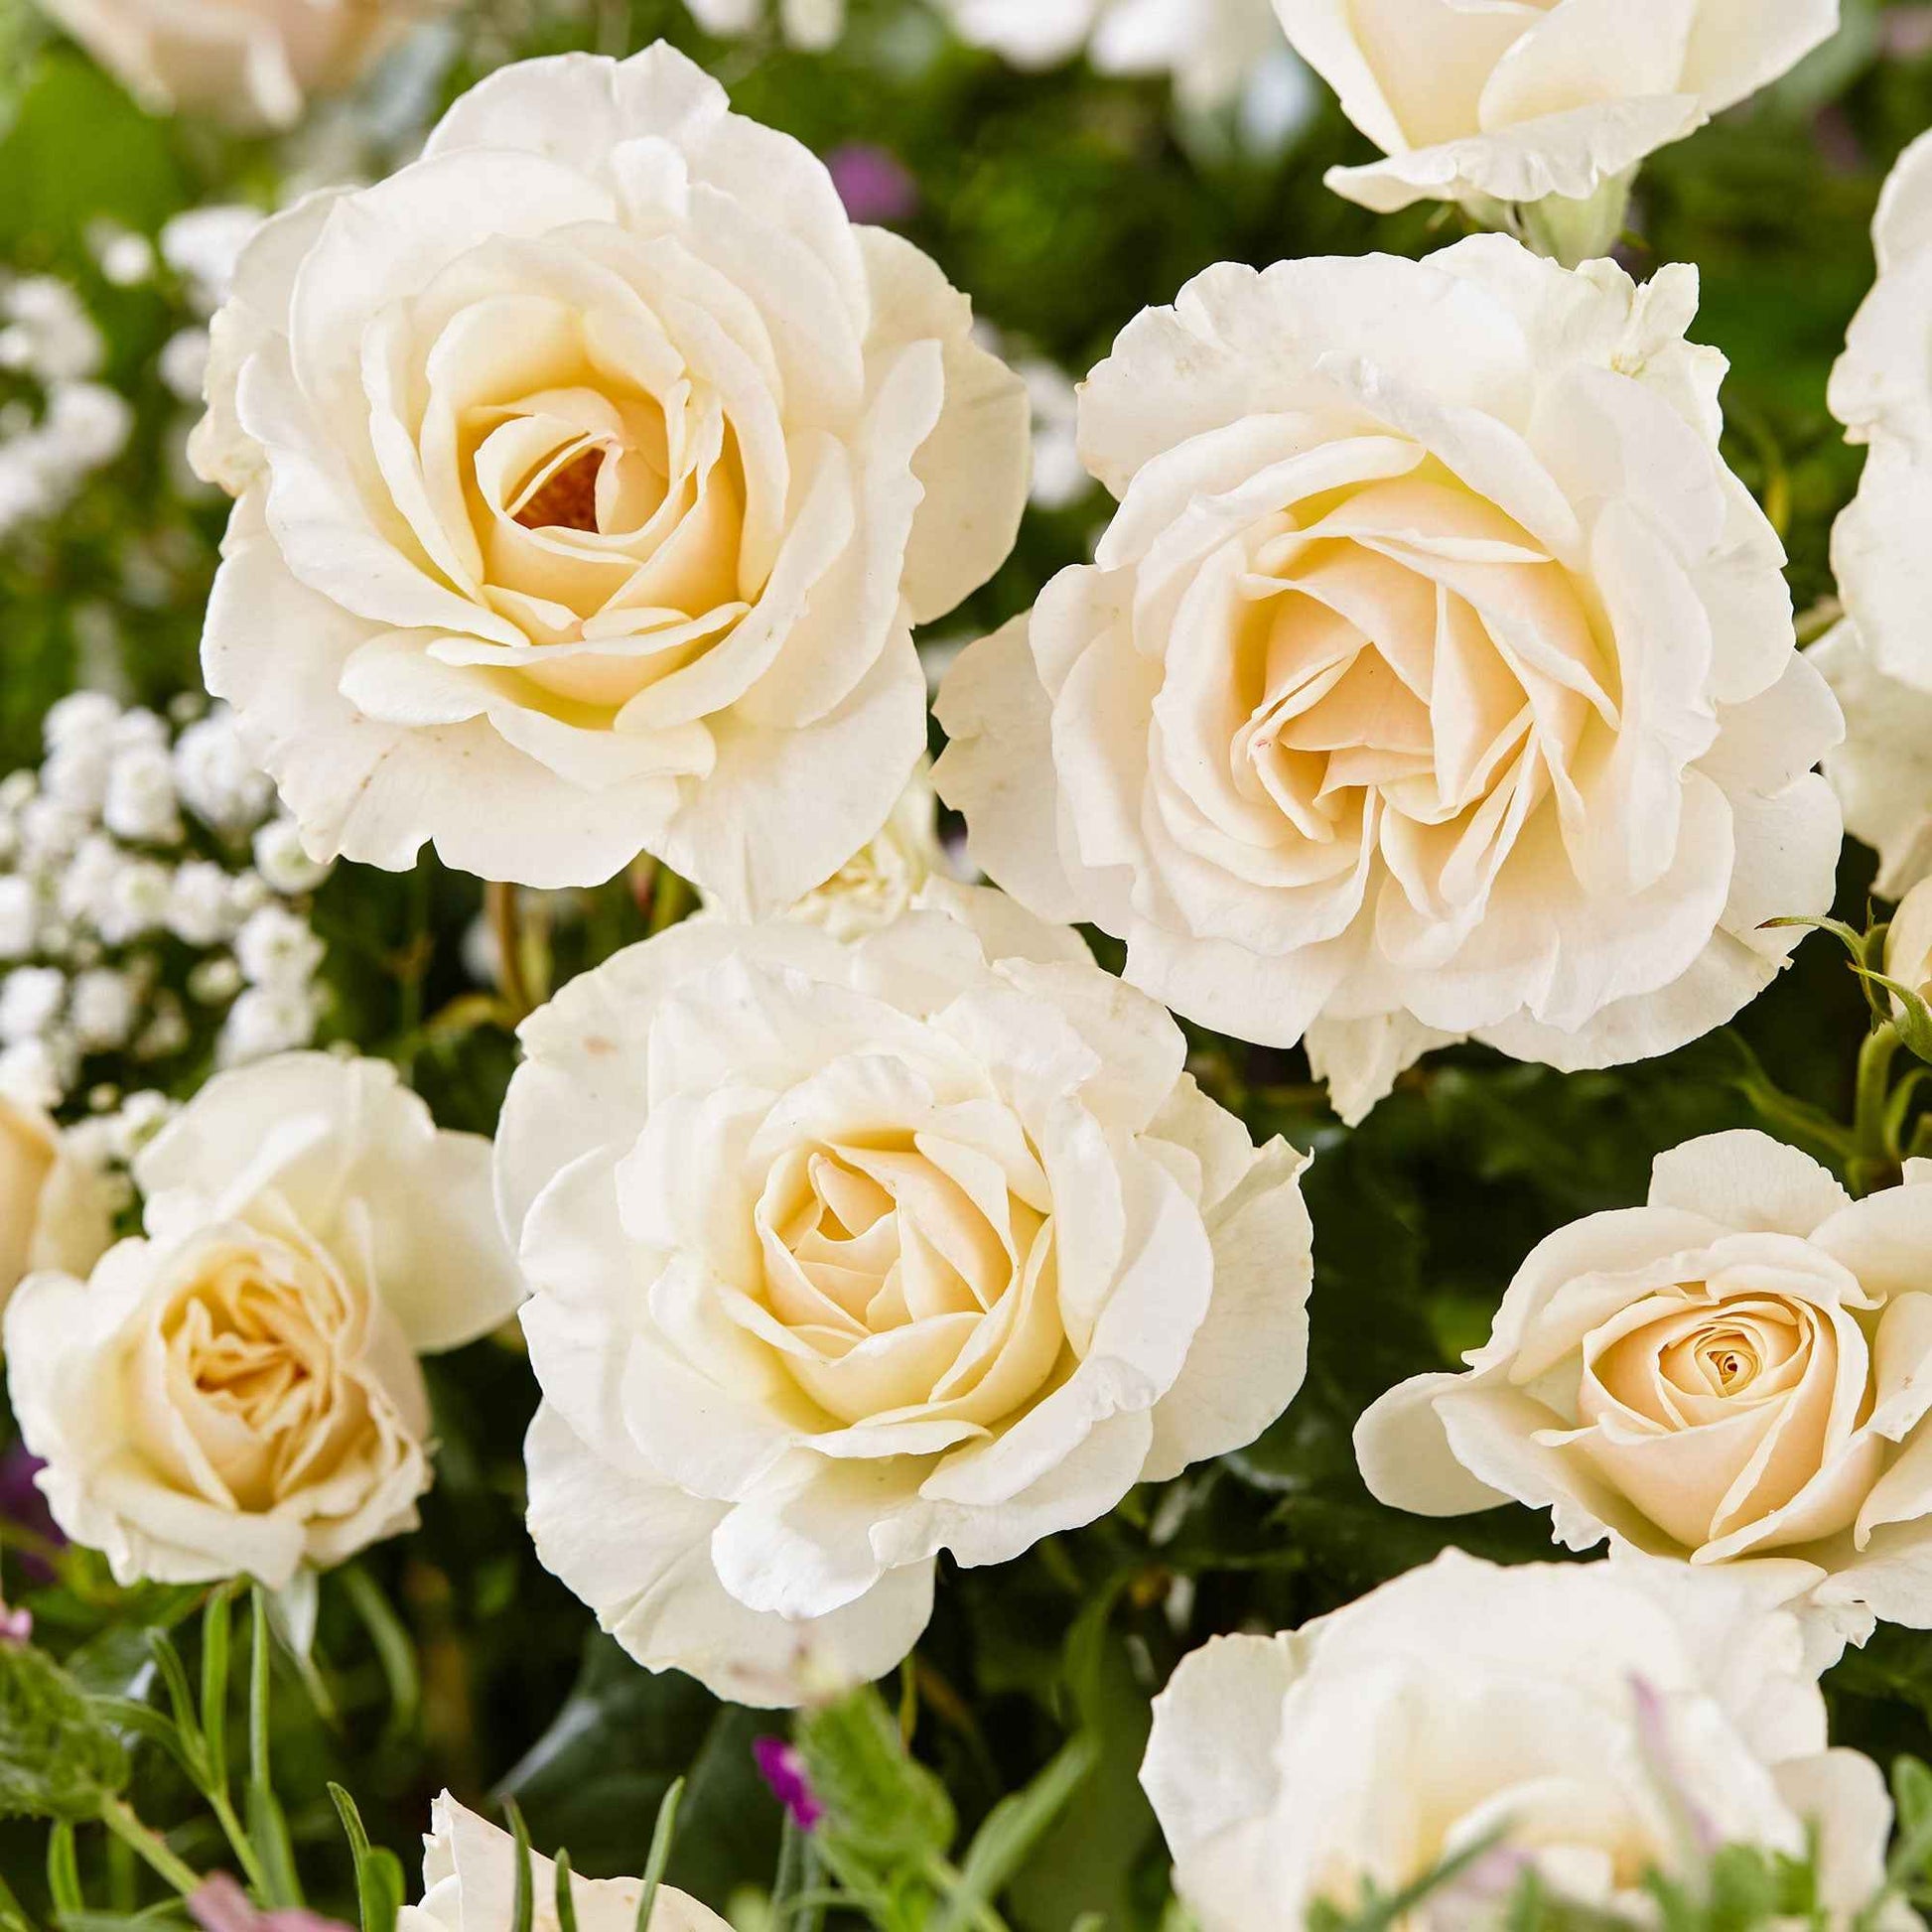 Großblütige Rose 'Rosa'  'True Love'® Weiß  - Wurzelnackte Pflanzen - Winterhart - Gartenpflanzen